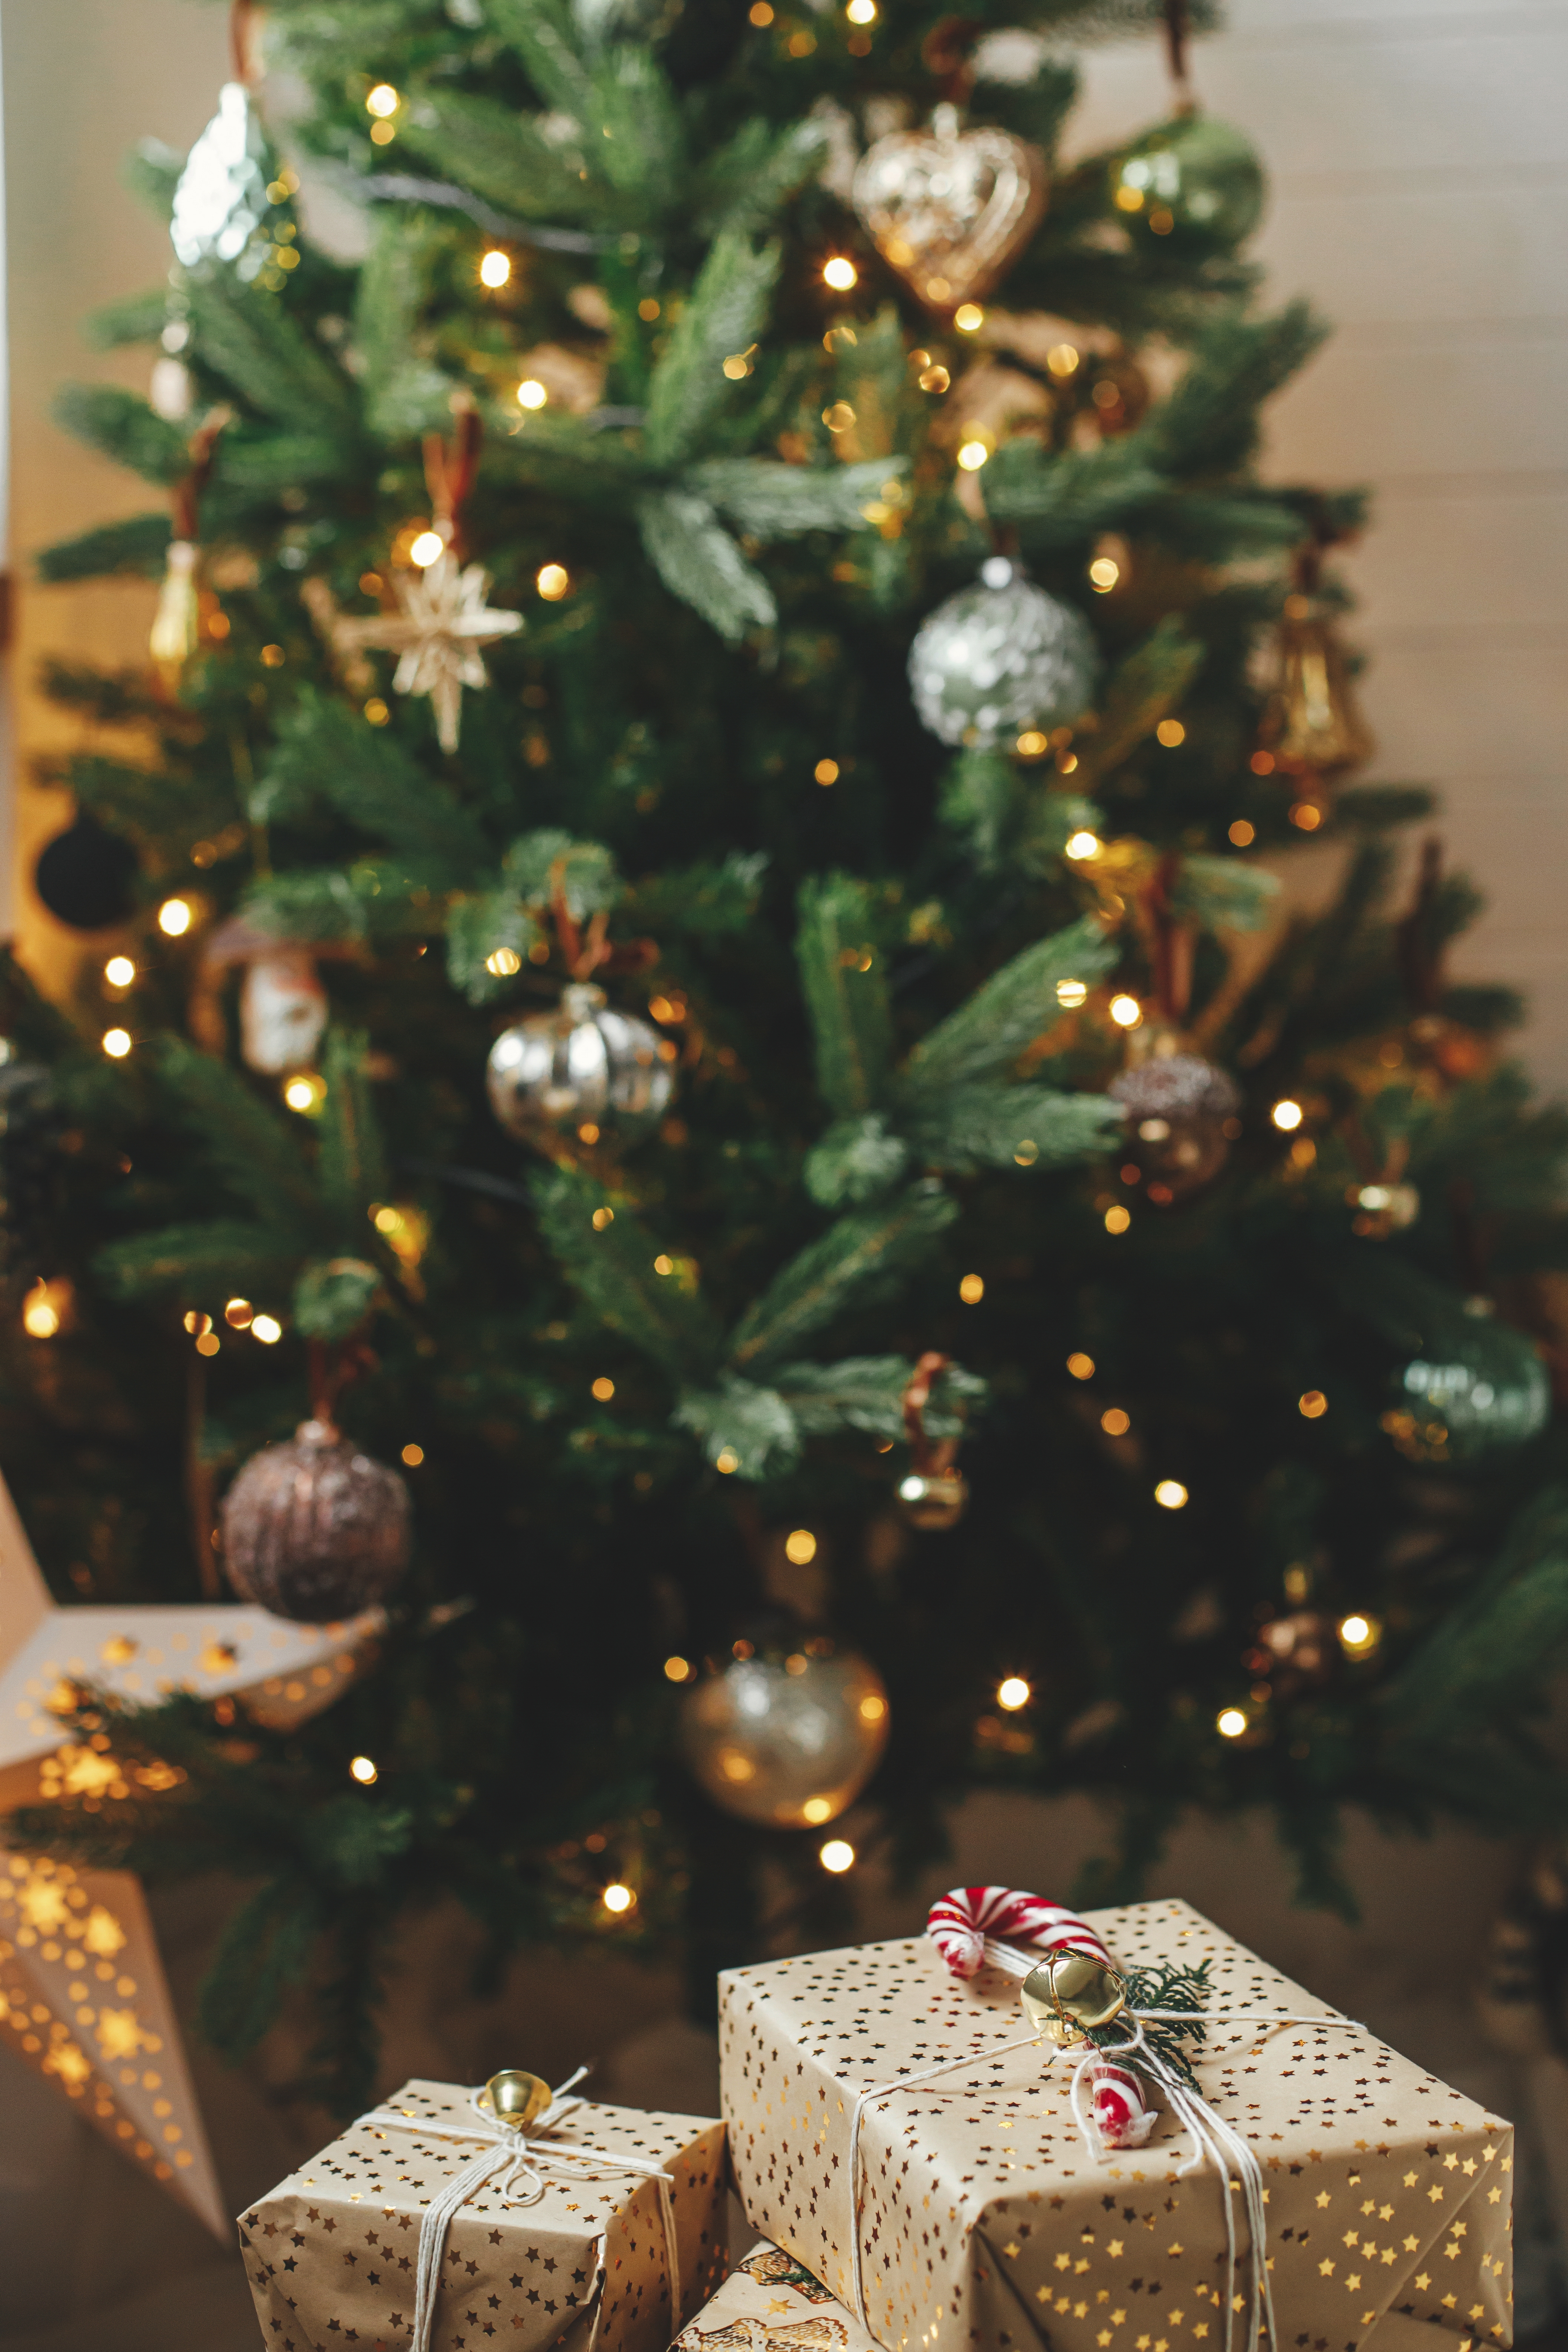 Boîtes de cadeaux placées sous un sapin de Noël | Source : Shutterstock